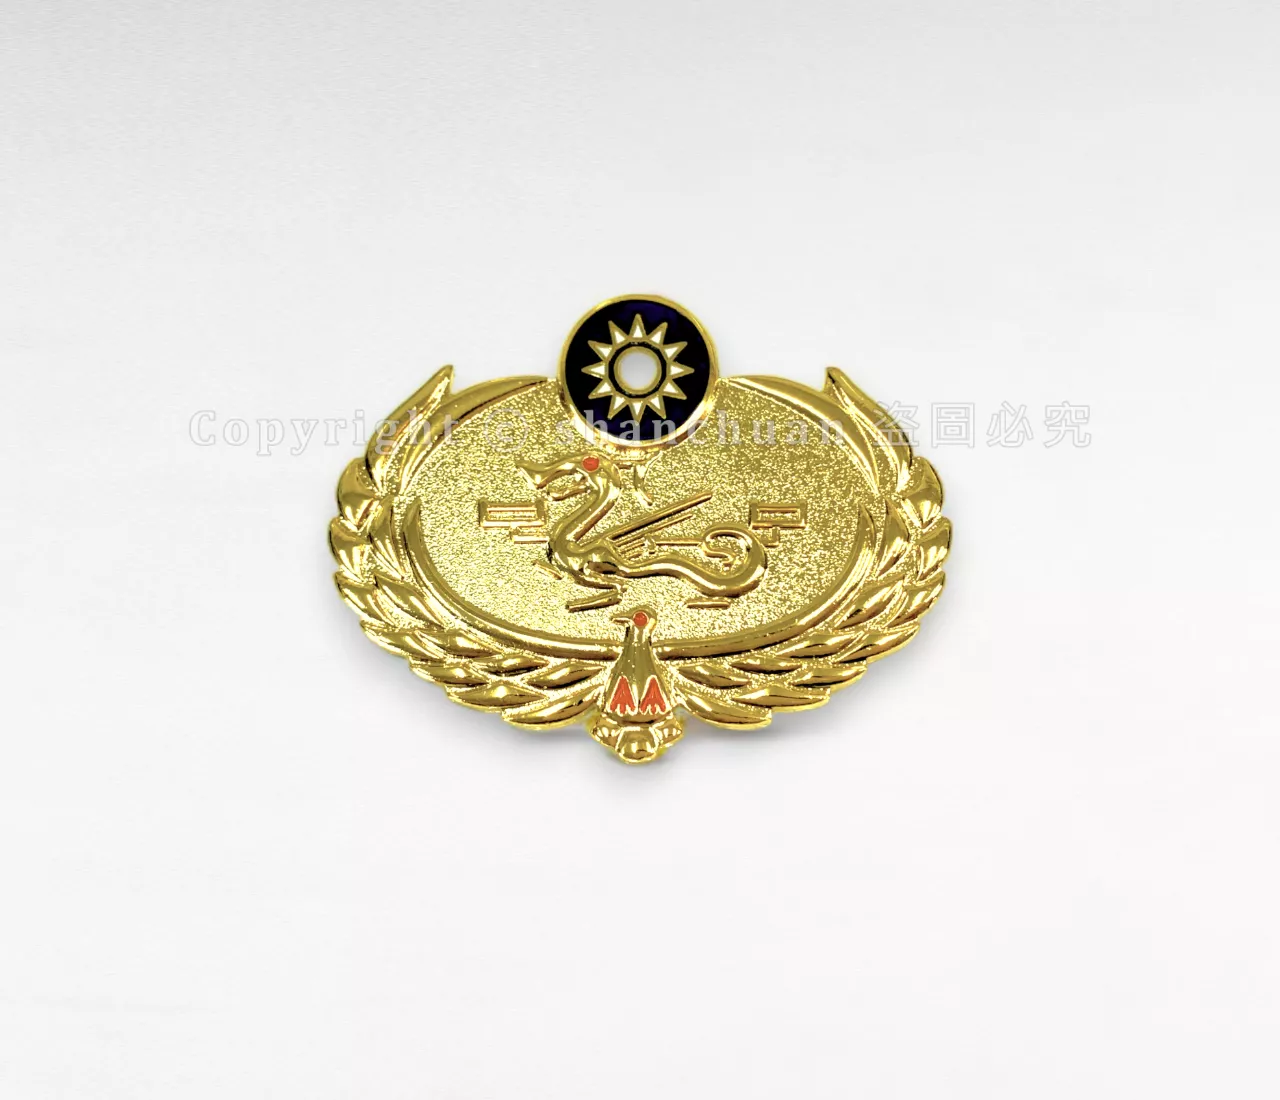 海巡榮譽徽章 - 金